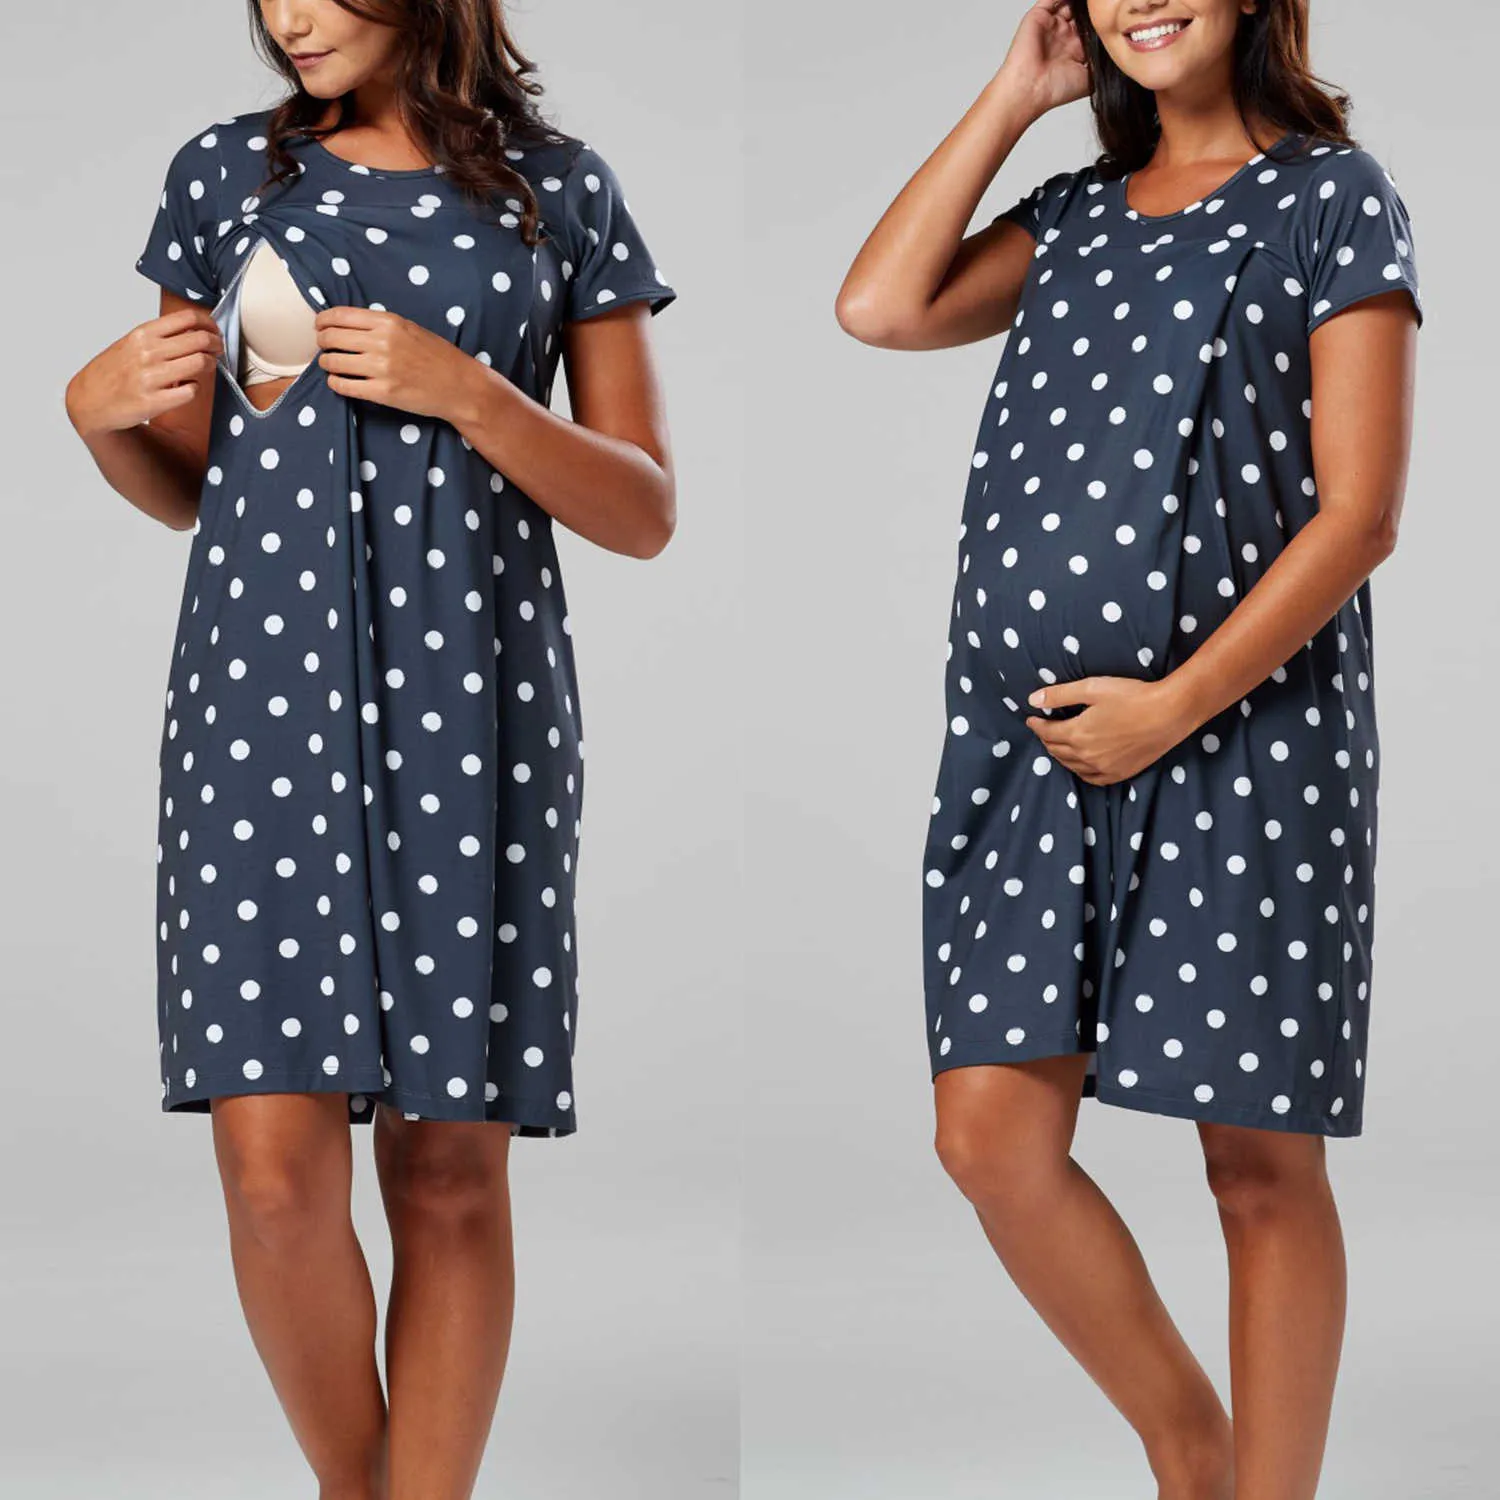 ポルカドットママドレスプリントマタニティドレス半袖妊婦母乳育児後のママ看護ユニークなデザインのための夏の服